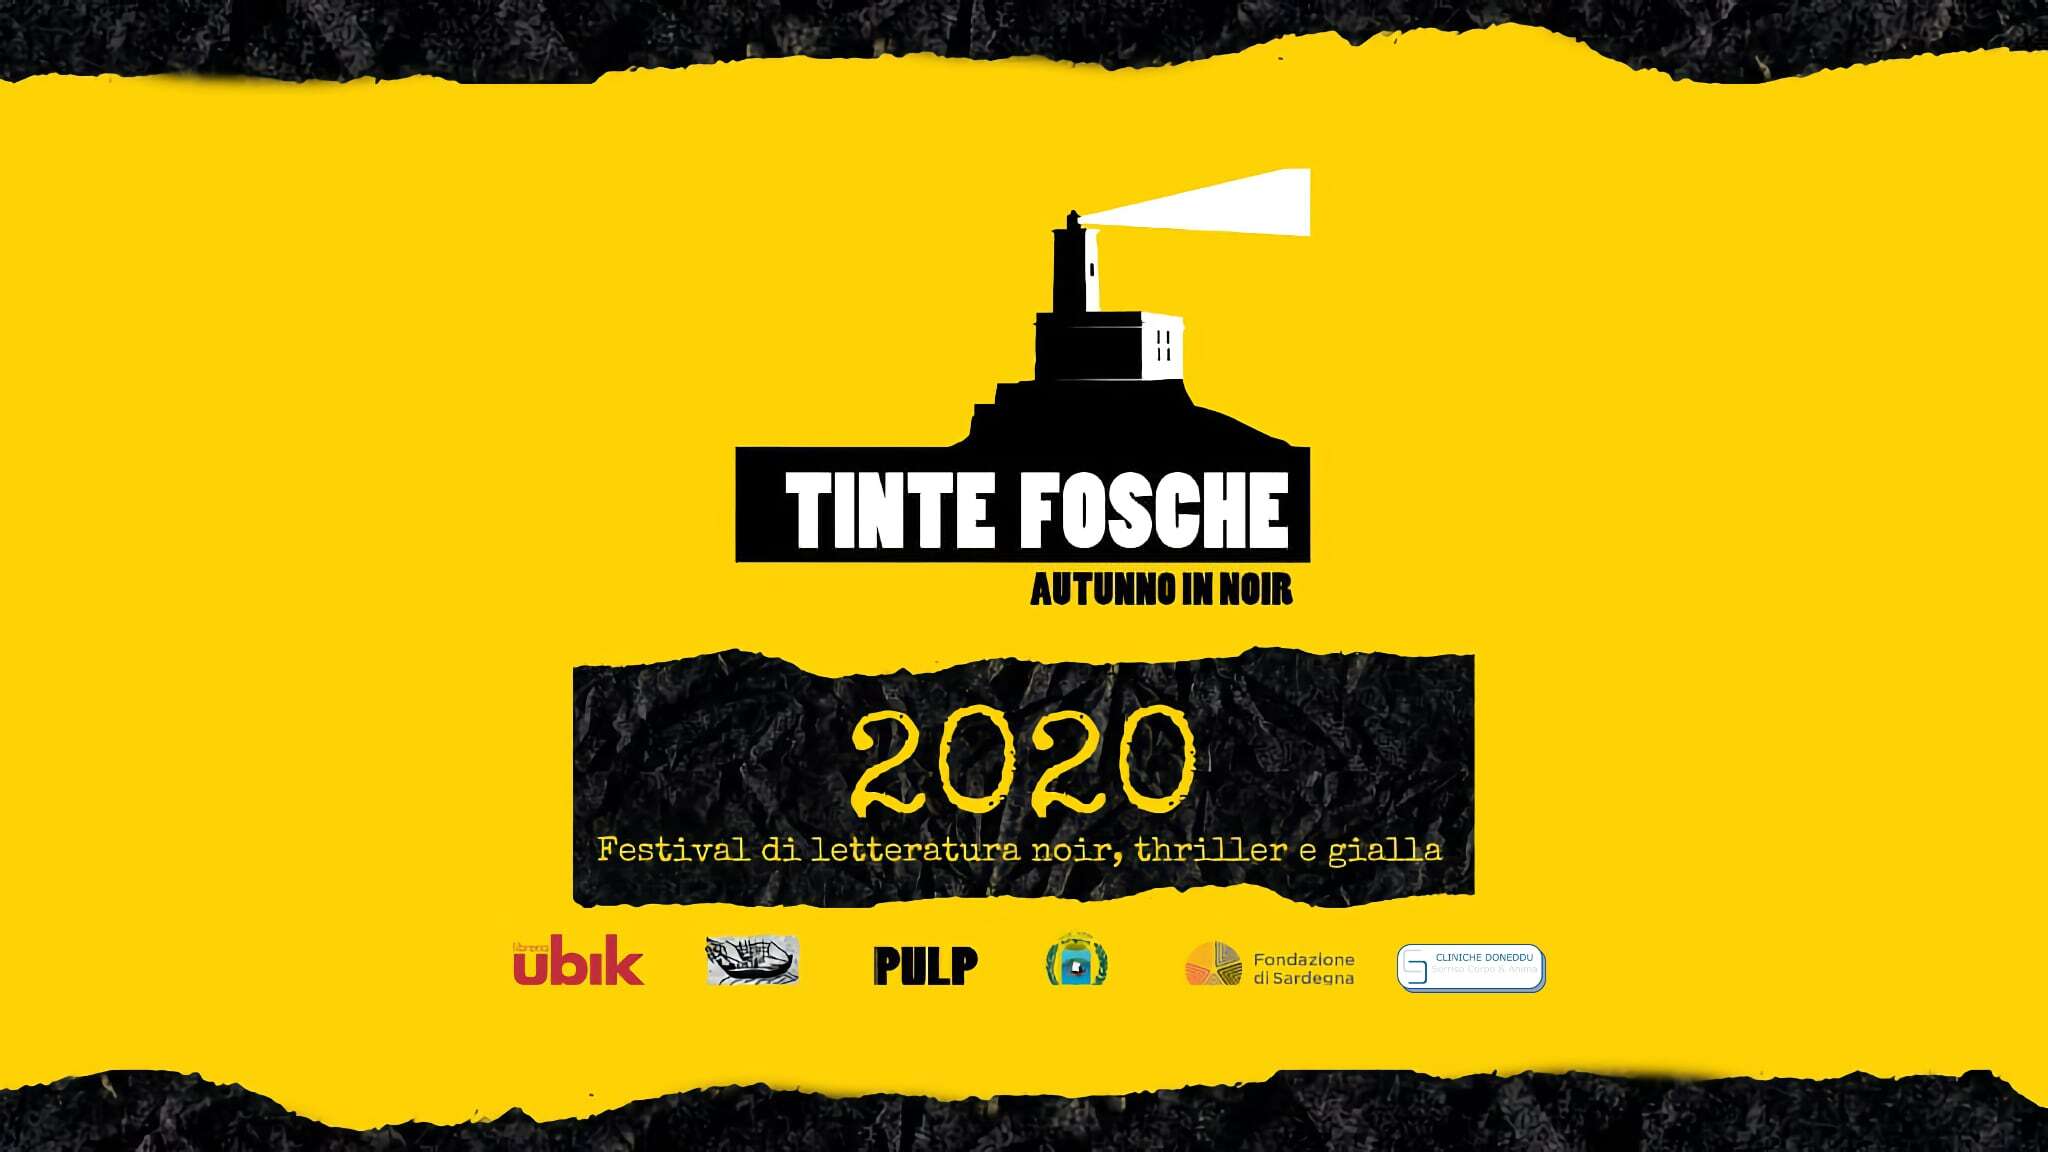 Tinte Fosche - Podcast in Noir